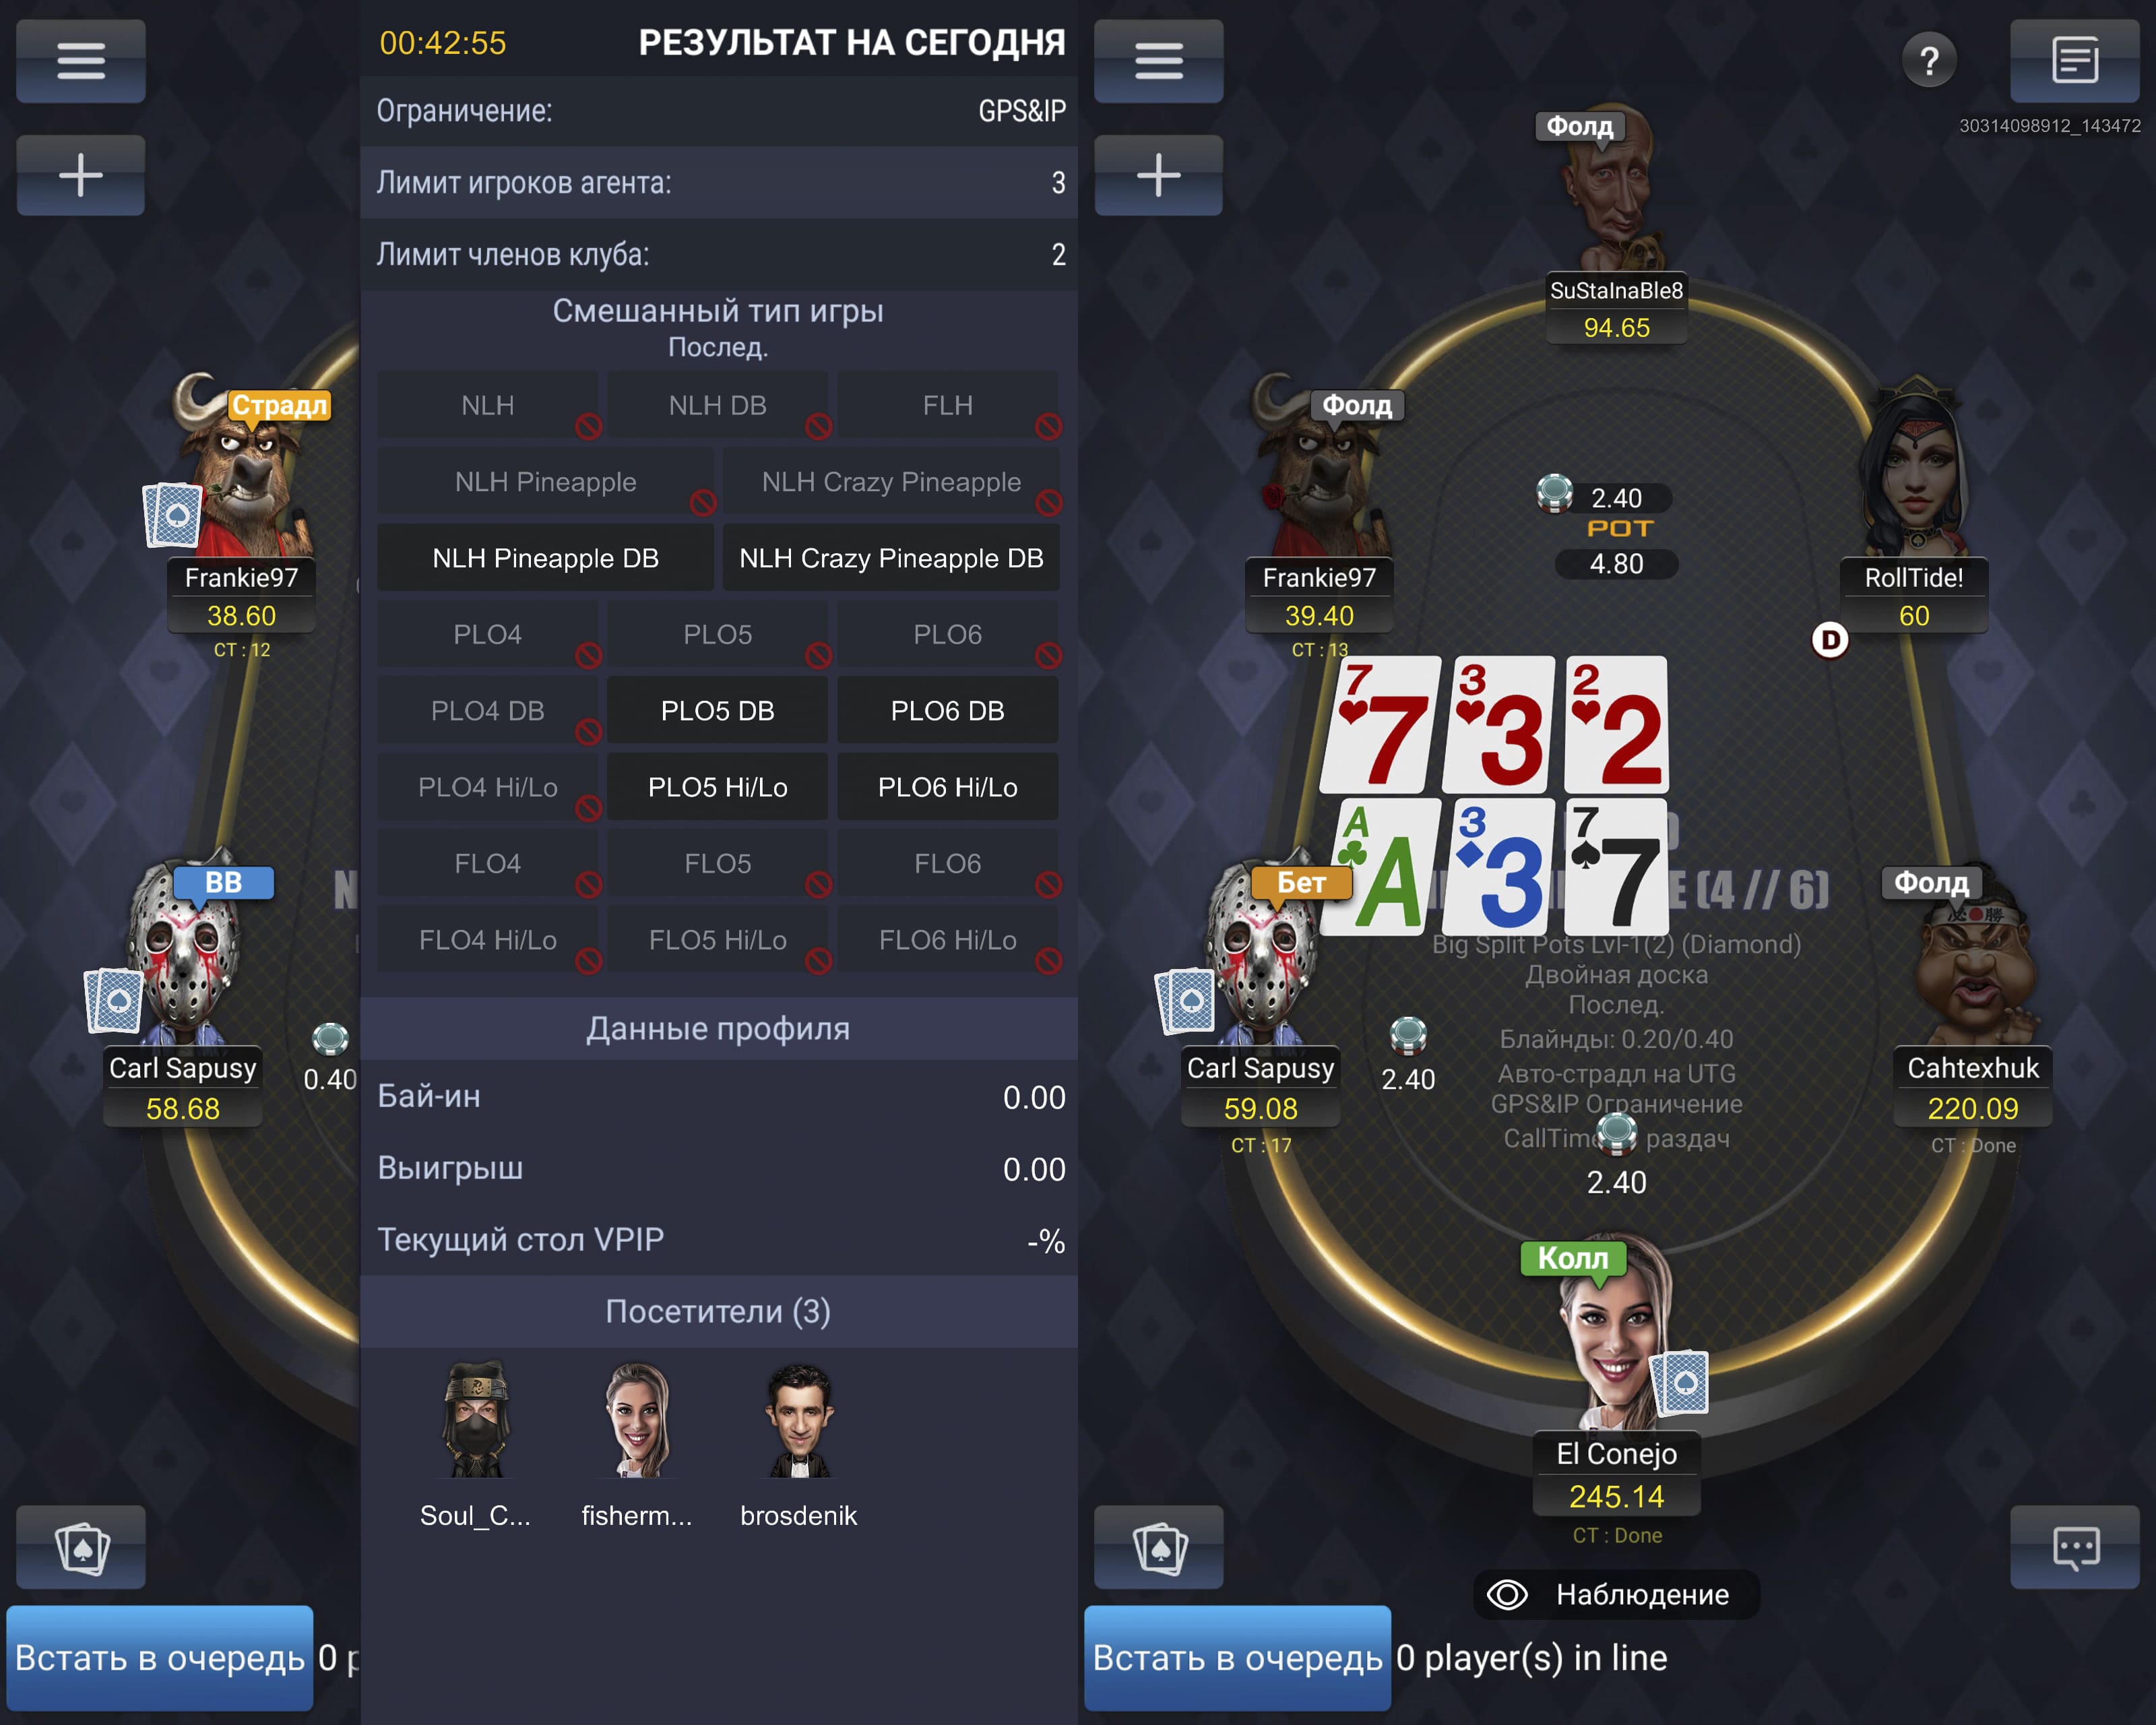 Настройки и игра за столом Mixed Game на PokerBROS